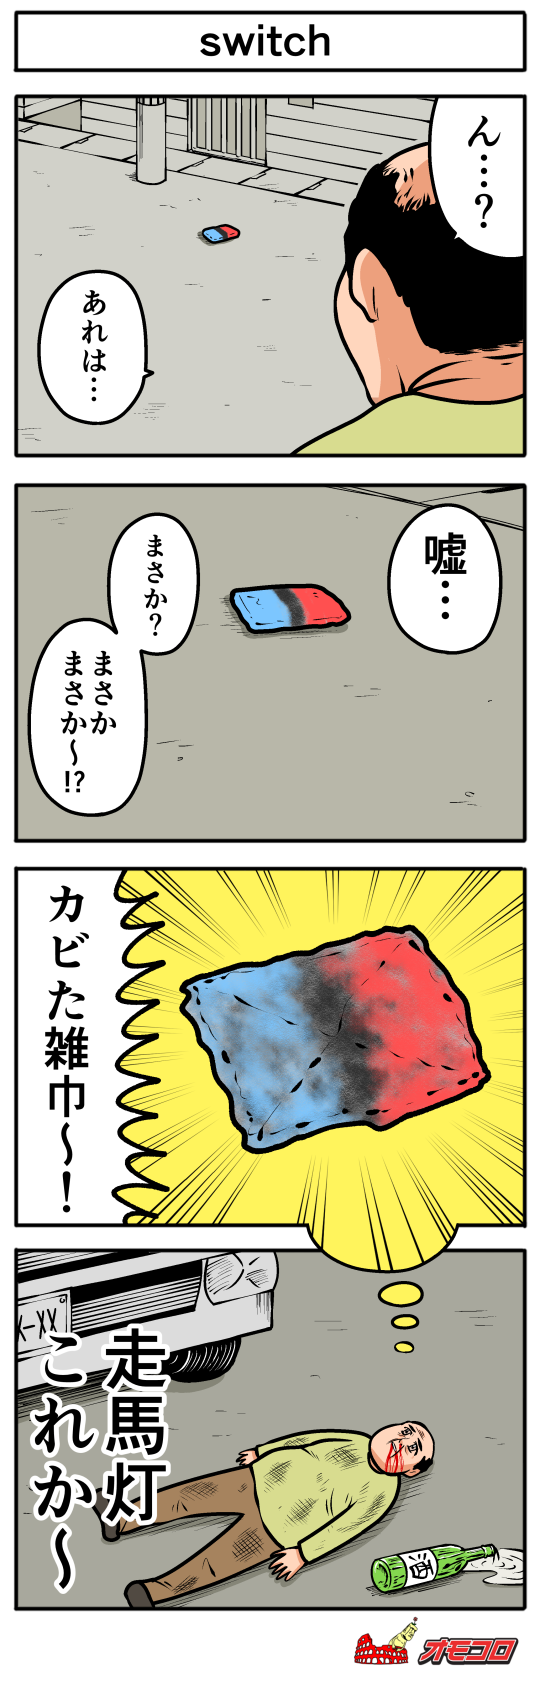 【４コマ漫画】switch